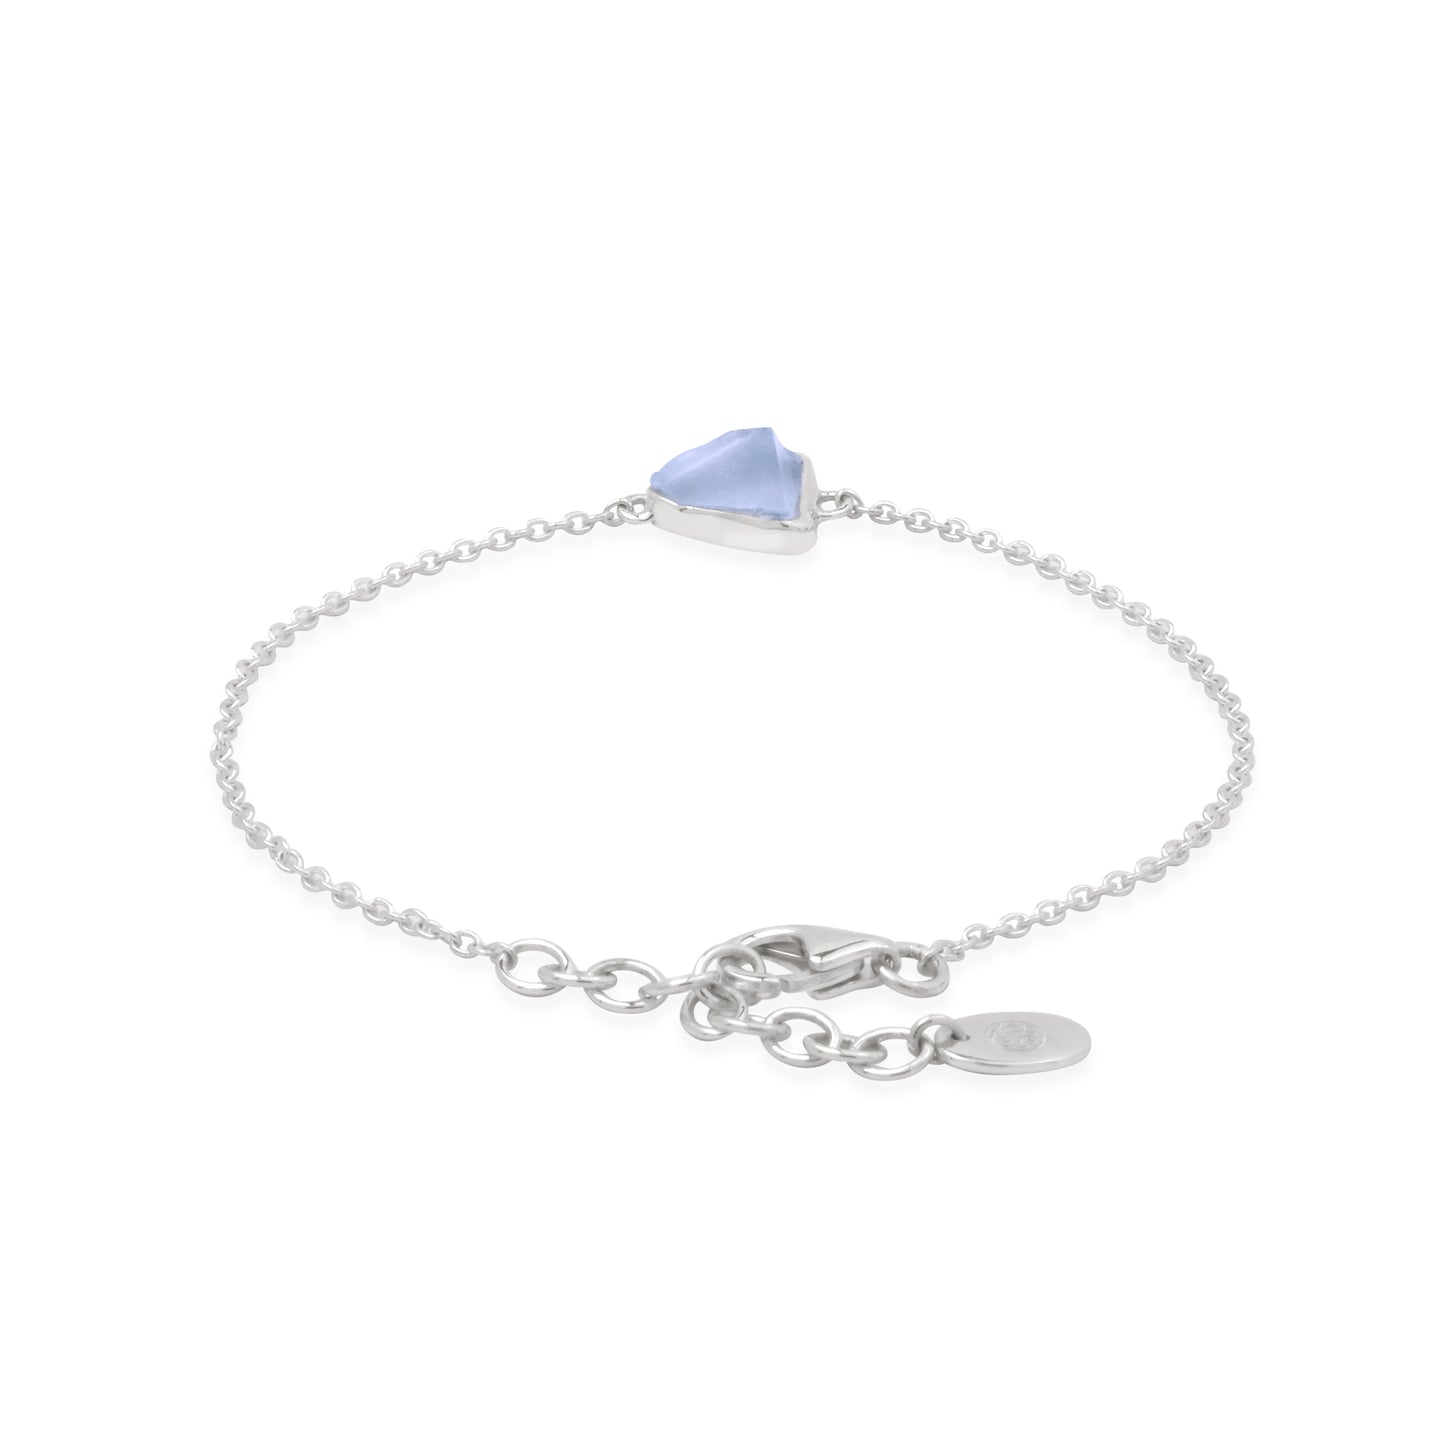 The spiritual delight: Blue Topaz Bracelet